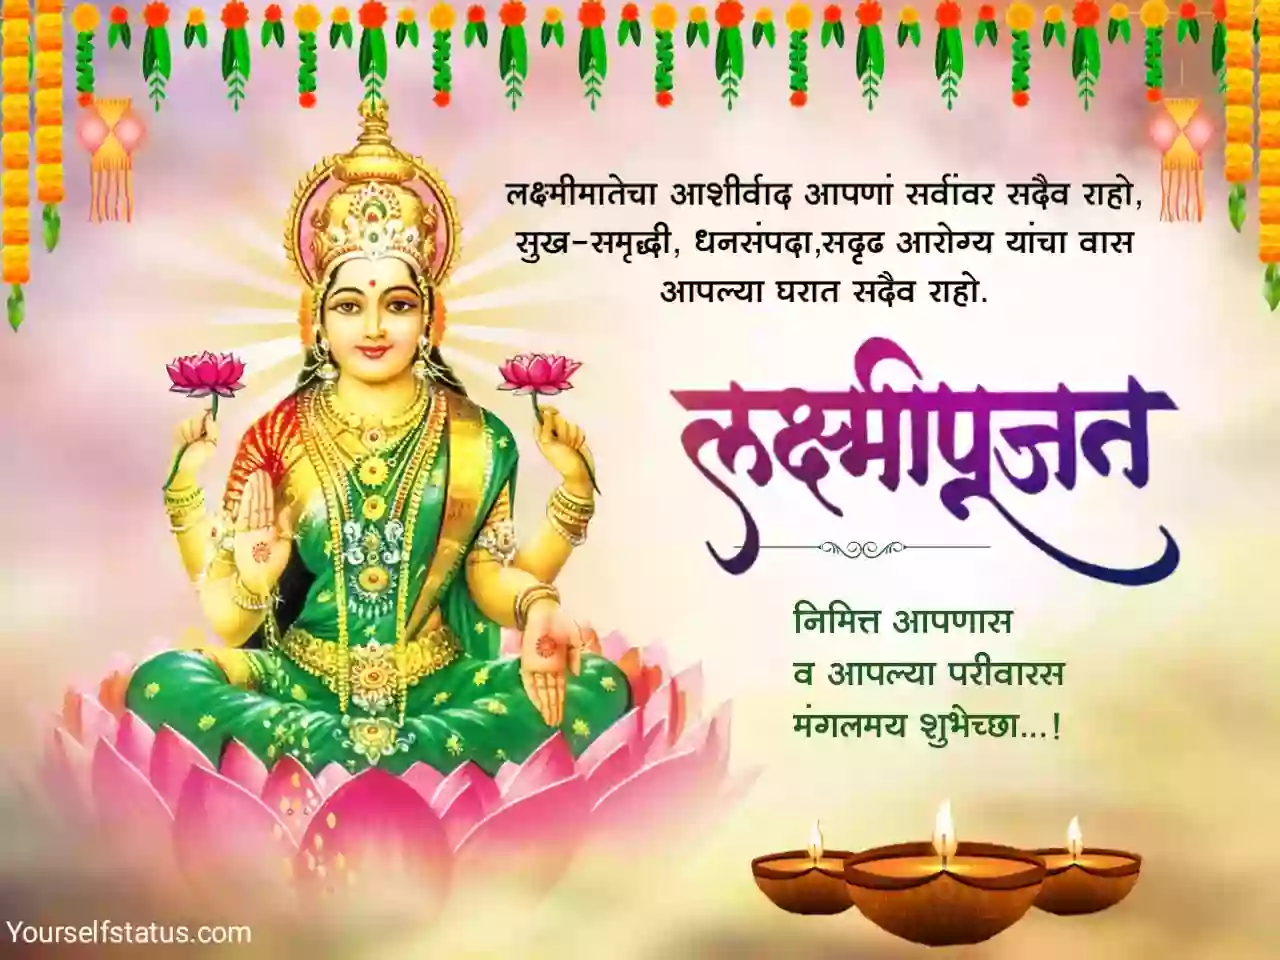 lakshmi pujan wishes in marathi